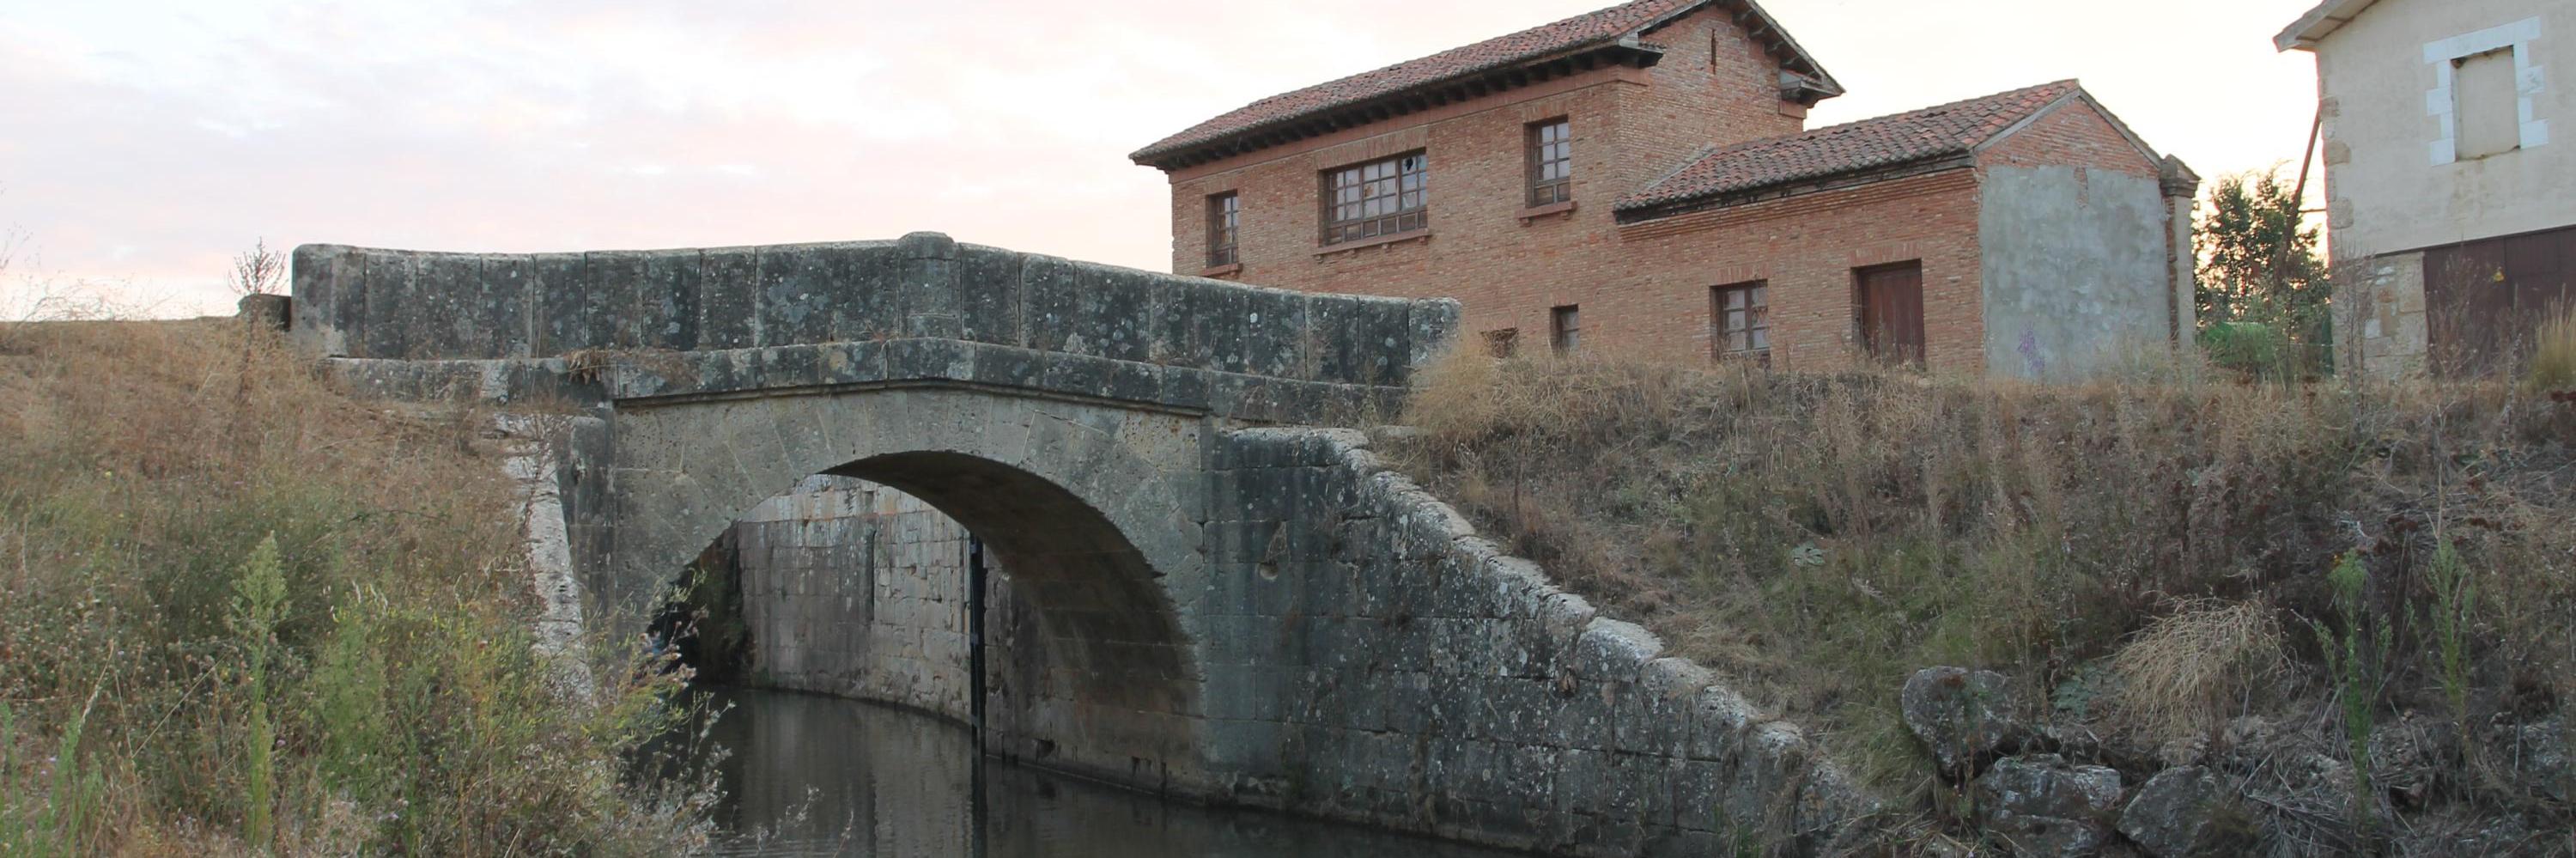 Esclusa 14 Canal de Castilla